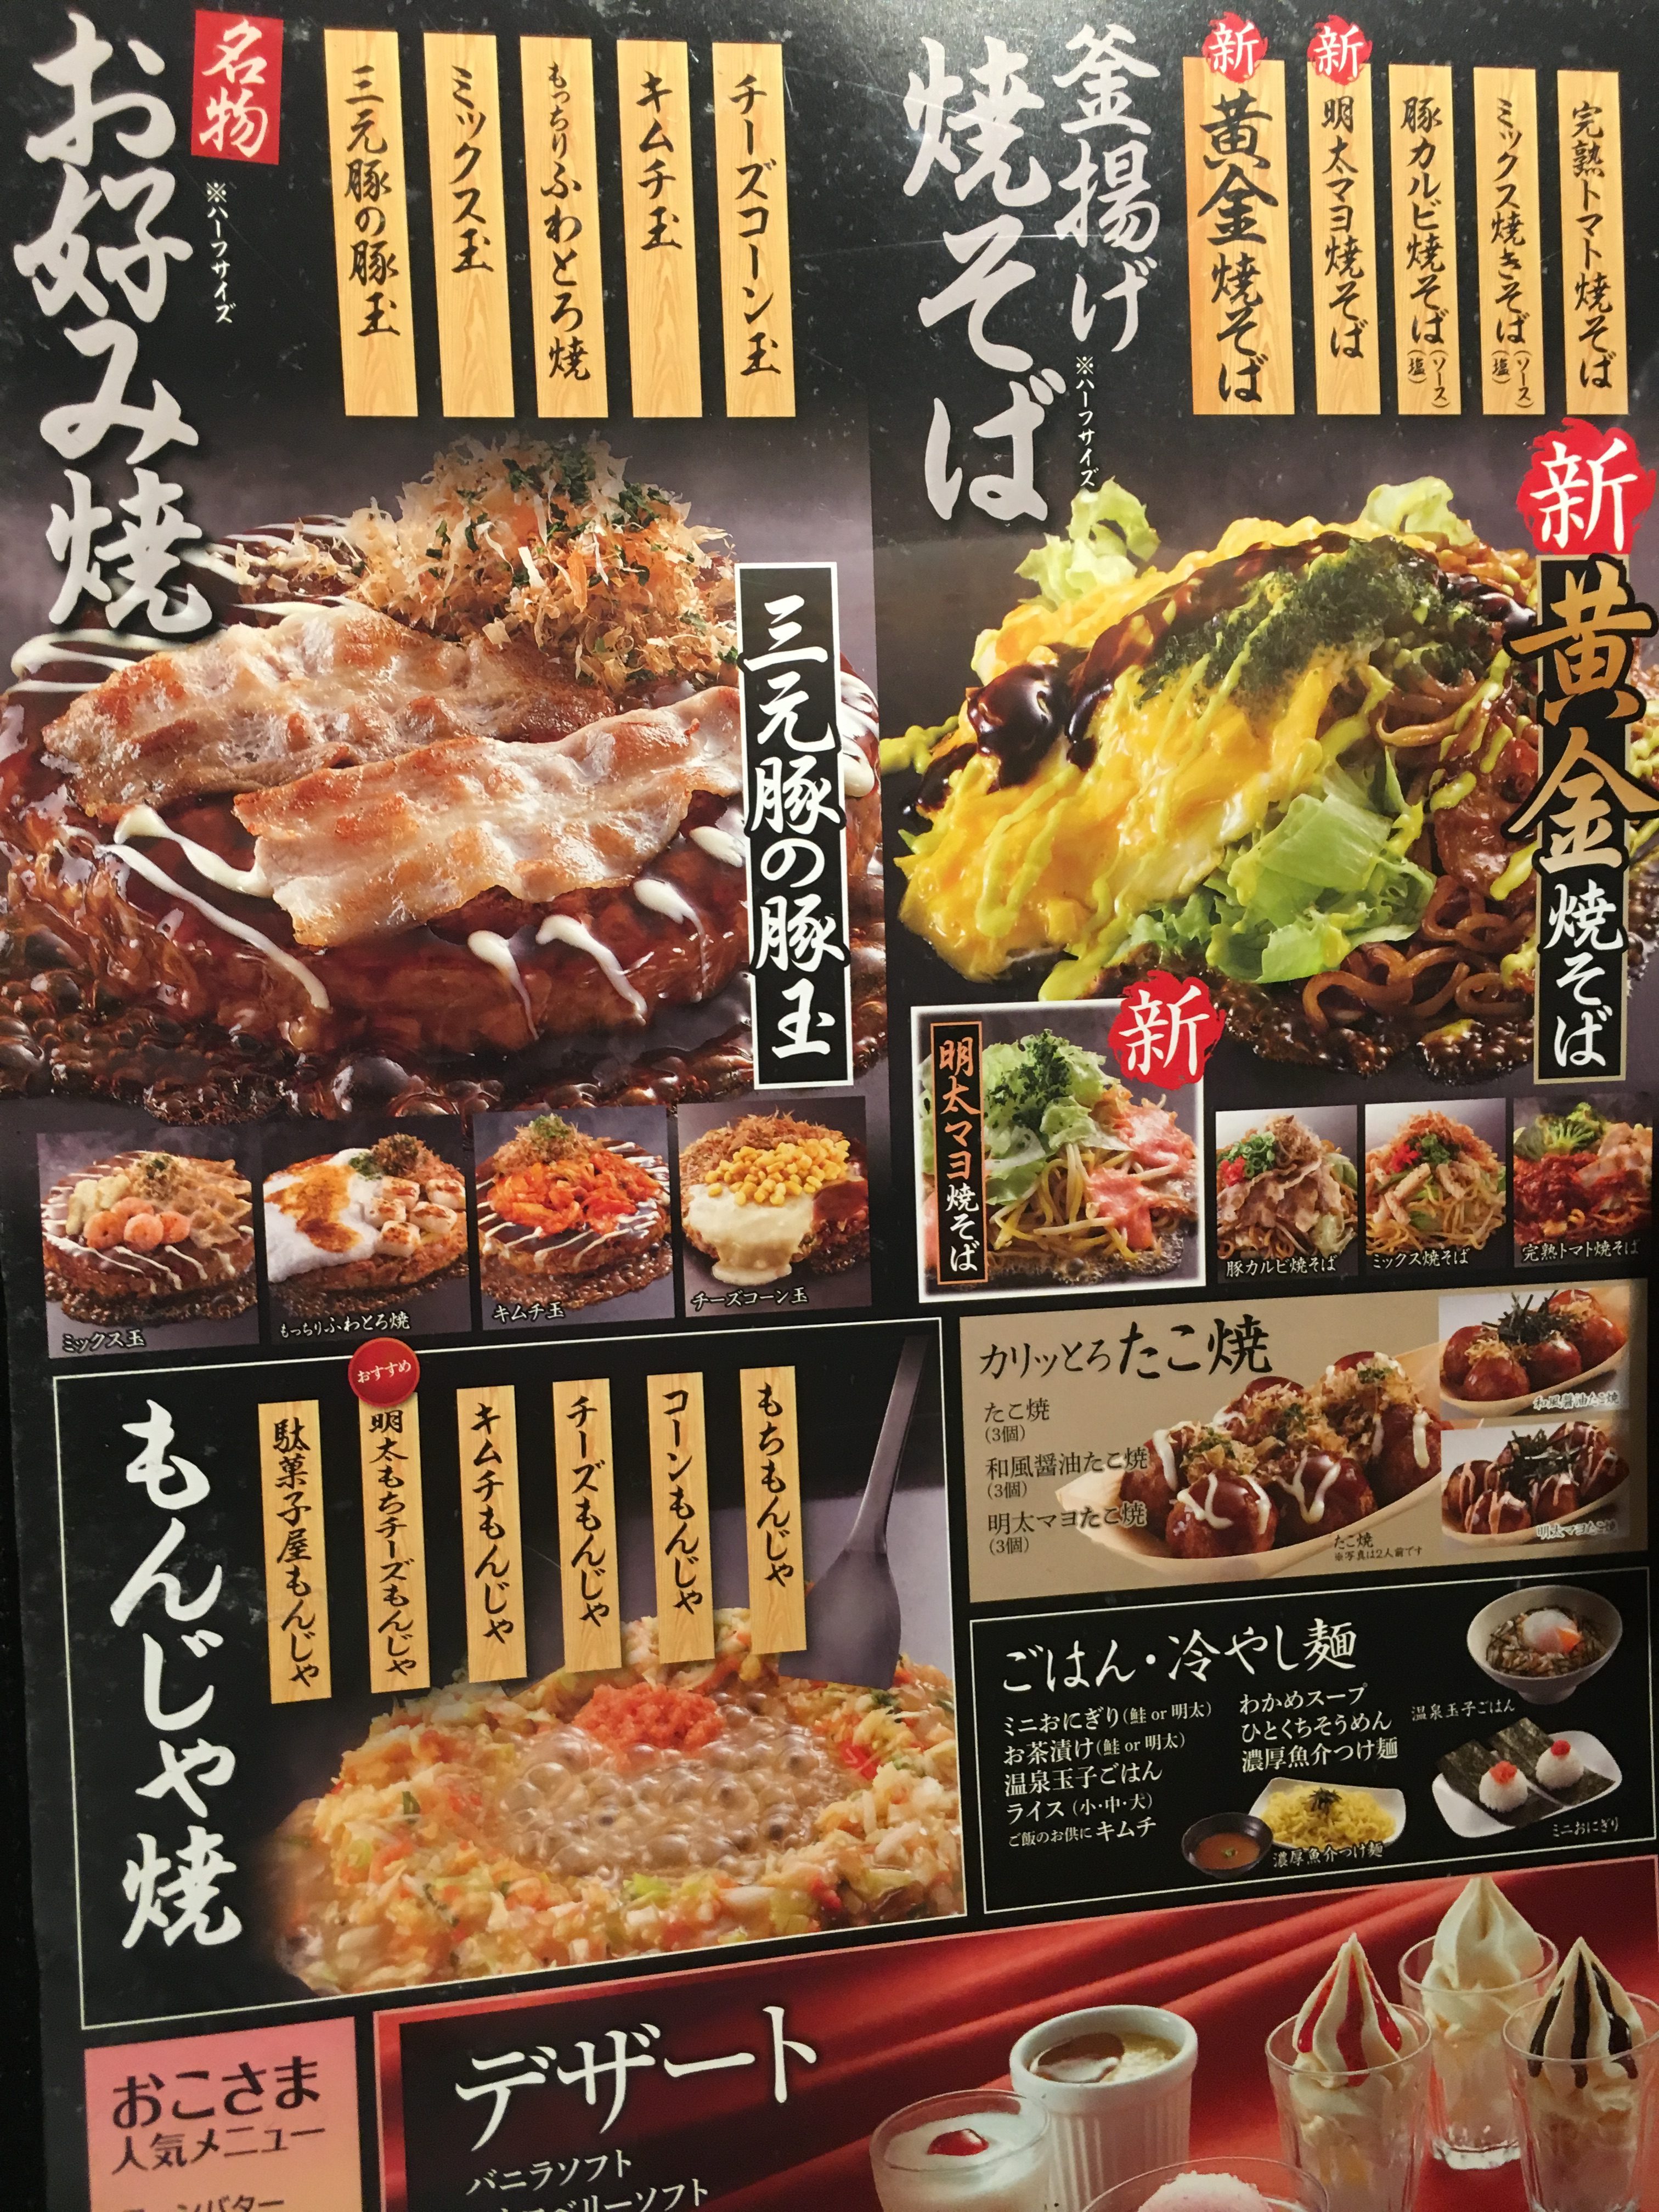 お好み焼本舗 ステーキ 海鮮など食べ放題が１９８０円 閉店 熊本ポータル くまライク